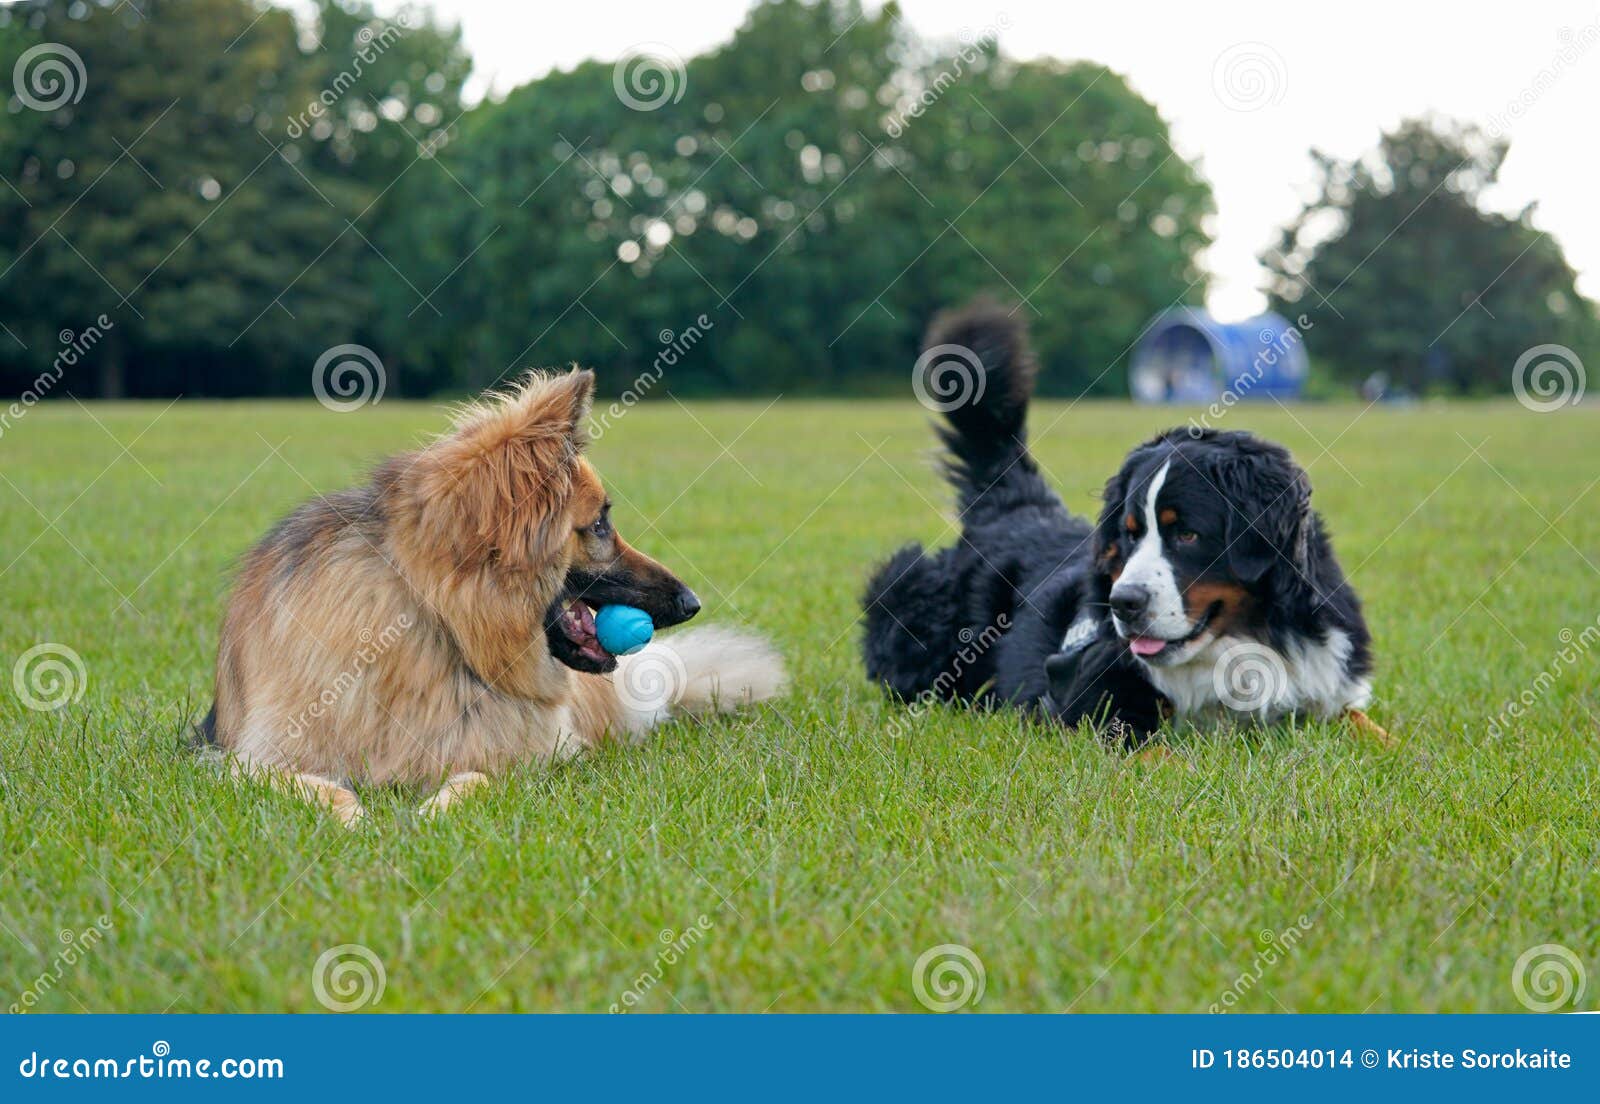 Dos Perros Grandes Que Juegan En El Parque Foto de archivo - Imagen de  estaciones, horizontal: 186504014